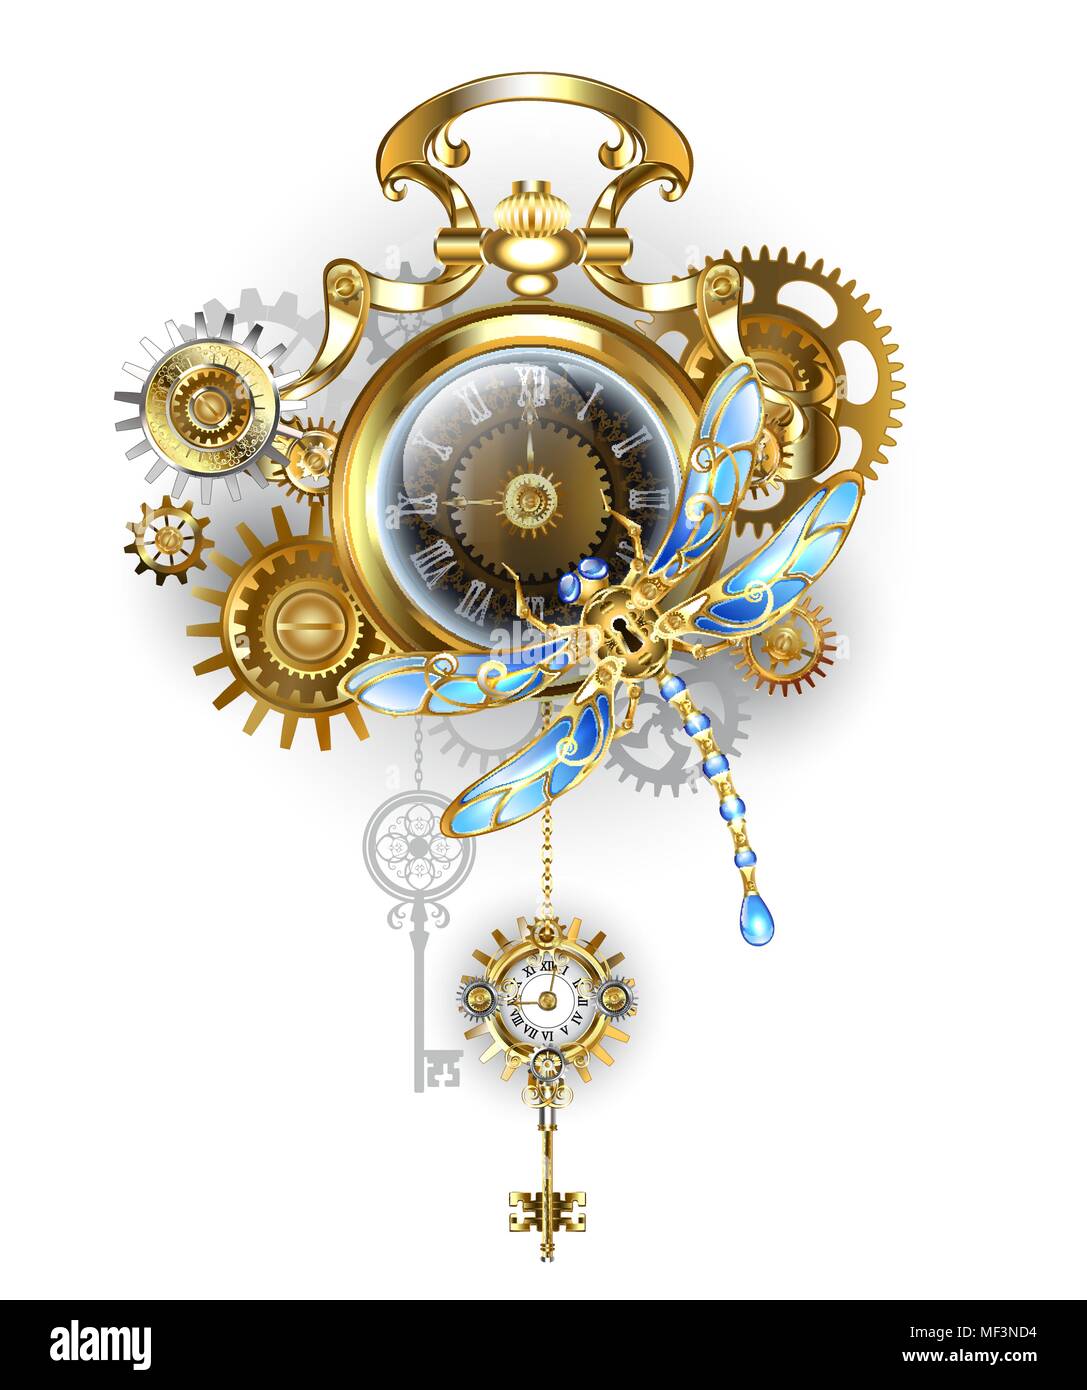 Antike, gold Watch mit dunklen Steampunk Zifferblatt mit mechanischen, Dragonfly, Messing und Gold Zahnräder auf weißem Hintergrund. Steampunk Stil. Stock Vektor